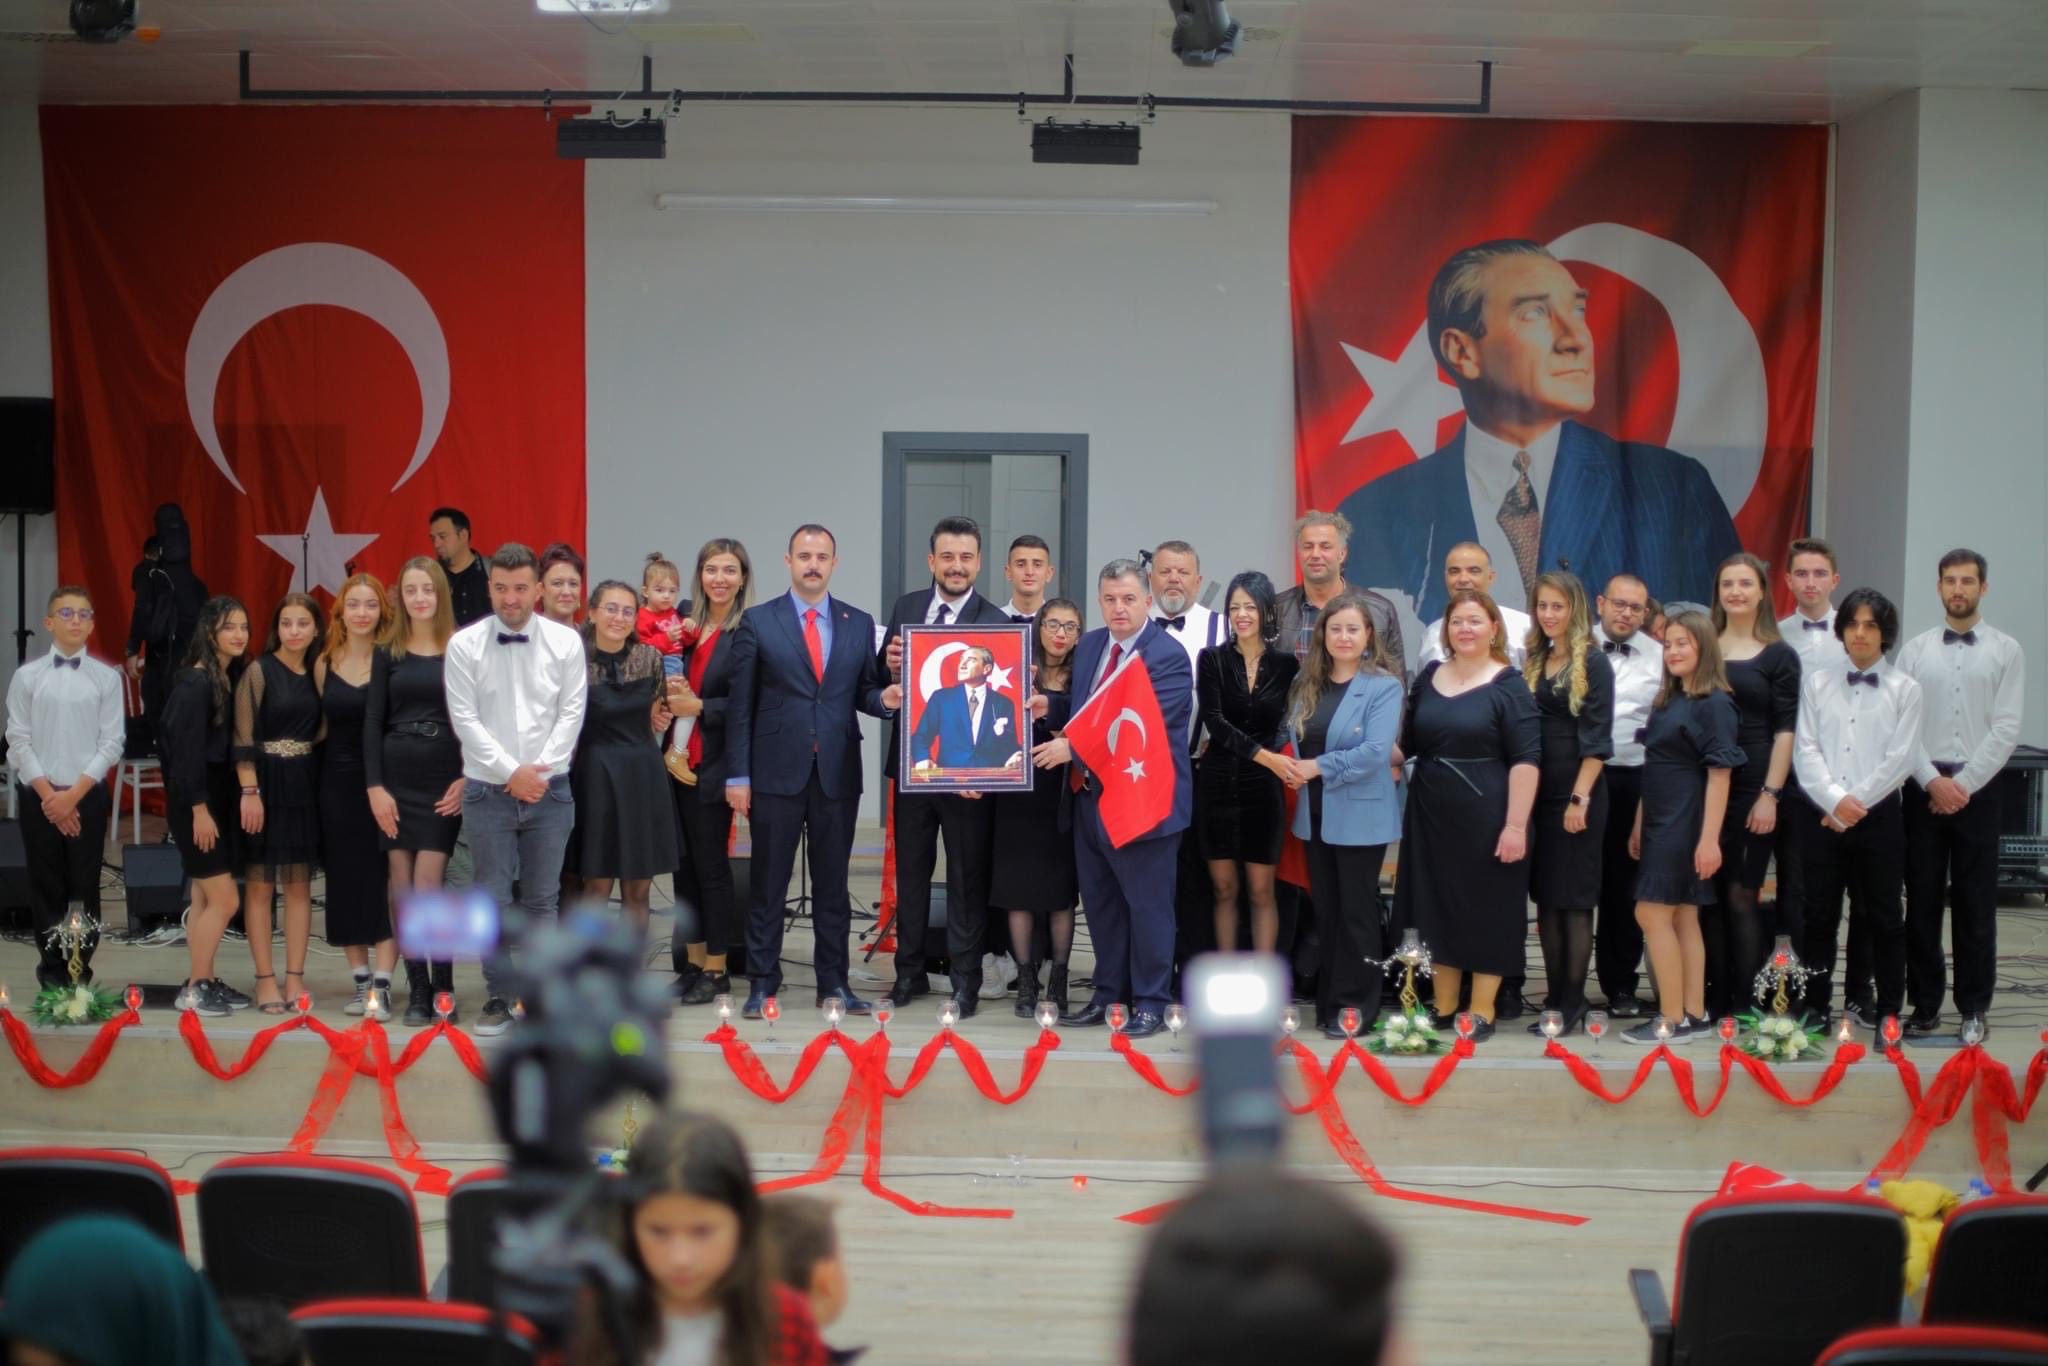 29 ekim Cumhuriyet’in 99’ncu yıl dönümünü hafta boyunca çeşitli etkinliklerle kutlayan Kınık Belediyesi, ay-yıldızlı bayraklarla bezenen ilçede Cumhuriyet Haftası’nda bayram coşkusunu yaşattı. Kınık’ta 29 Ekim Cumhuriyet Bayramı 99. Yıldönümü programı kapsamında 28 Ekim günü, Kınık Kaymakamı Abdurrahman Çelebi, Kınık Belediye Başkanı Dr. Sadık Doğruer, İlçe Jandarma Komutanı Oral Kaymak, İlçe Emniyet Müdürü Murat Coşkun, siyasi parti ve STK temsilcilerinin katıldığı törende Kınık Cumhuriyet Meydanı’nda bulunan Atatürk Anıtına çelenk bırakıldı. Düzenlenen törenin ardından; Başkan Doğruer ve Kınık Kaymakamı Abdurrahman Çelebi, Kınık Belediyesi Aile Yaşam Merkezlerinde eğitim gören miniklerle bir araya gelerek, Cumhuriyet coşkularına ortak oldular. Cumhuriyet çocuklarını ziyaretinde bir açıklama yapan Başkan Doğruer “İlçemizde Cumhuriyet’in kazanımları ve milletimizin mukaddes değerleri ile bir nesil yetişsin diye üzerimize düşeni hep yaptık, yapmaya da devam edeceğiz. Bizde bugün ilk olarak, yavrularımızla bayramı kutladık, çok mutluyuz” dedi.
29 Ekim’de Kınık Kaymakamlığı’nda tebriklerin kabulünün ardından saat 11.00’da Kınık Cumhuriyet Meydanı’nda Cumhuriyet Bayramı kutlama programı düzenlendi. Başkan Doğruer ve İlçe Kaymakamı, tören alanına geçerken ilçe halkını ziyaret ederek bayramlarını kutladılar.
Tören alanında, Belediye Başkan Doğruer ve ilçe protokolünün yanı sıra çok sayıda vatandaş hazır bulundu.
Saygı duruşu ve İstiklal Marşı’nın ardından bir konuşma yapan Kınık Kaymakamı Abdurrahman Çelebi “Yüz yıl önce bu topraklarda can vermiş şehitlerimizin, Gazi Mustafa Kemal Atatürk ve silah arkadaşlarının şerefli mirasıdır Cumhuriyet. Elbette bizler; bu aziz vatanın şanlı tarihini, özgürlük mücadelesini ve cumhuriyet meşalesini, ömrümüz vefa ettikçe şerefle taşıyacağız. Ecdadımızdan devraldığımız bu mirası, bizden sonraki nesillere aktarmak ve anlatmak için, Cumhuriyet Bayramımızı her yıl daha da artar bir coşkuyla kutlayacağız. Başta Cumhuriyet’in Kurucusu Mustafa Kemal Atatürk olmak üzere, bütün şehitlerimizin ruhları şad olsun, Allah onlardan ebeden razı olsun. Bayramımız kutlu olsun” dedi.
Cumhuriyet Haftası etkinlikleri çerçevesinde düzenlenen şiir yarışmasında birinci olan Mehmet Akif Ersoy Ortaokulu öğrencisi Ayşe Rukiye Aşçıoğlu’nun okuduğu şiirin ardından, Şehit Hakan Sağınç Anadolu Lisesi müzik öğretmeni Zeynep Eğilli yönetimindeki öğrenciler sergiledikleri performansları ile alanı dolduran Kınıklılara keyifli anlar yaşattılar. Kınık Halk Eğitim Merkezi halk oyunları ekibi tarafından hazırlanan gösteri bayramı doyasıya yaşayan ilçe halkını mest etti.
Ayrıca Cumhuriyet Bayramı 99. Yılı anısına yapılan “Cumhuriyet” konulu şiir, kompozisyon, resim, zeka oyunları ve spor yarışmalarında dereceye giren katılımcılara ödülleri Belediye Başkanı Dr. Sadık Doğruer, İlçe Kaymakamı Aburrahman Çelebi tarafından verildi.
İlçeyi adeta gelin gibi bezeyen ay-yıldızlı bayraklar ve flamalar ile, fener alayı ve bando takımı eşliğinde Hükümet Konağı önünden Cumhuriyet Meydanı’na büyük bir kalabalık ve coşkuyla yürüyen Kınıklılar, ikinci günün son programı olan yerel sanatçı Fırat Tanır önderliğindeki Kınık Belediye Korosu’nun Cumhuriyet şarkılarına eşlik edildi.
Kınık’ta Cumhuriyet Haftası kutlama etkinlikleri 31 Ekim Pazartesi günü akşam saat 20.00’da Tuğçe Kandemir konseri ile son bulacak.